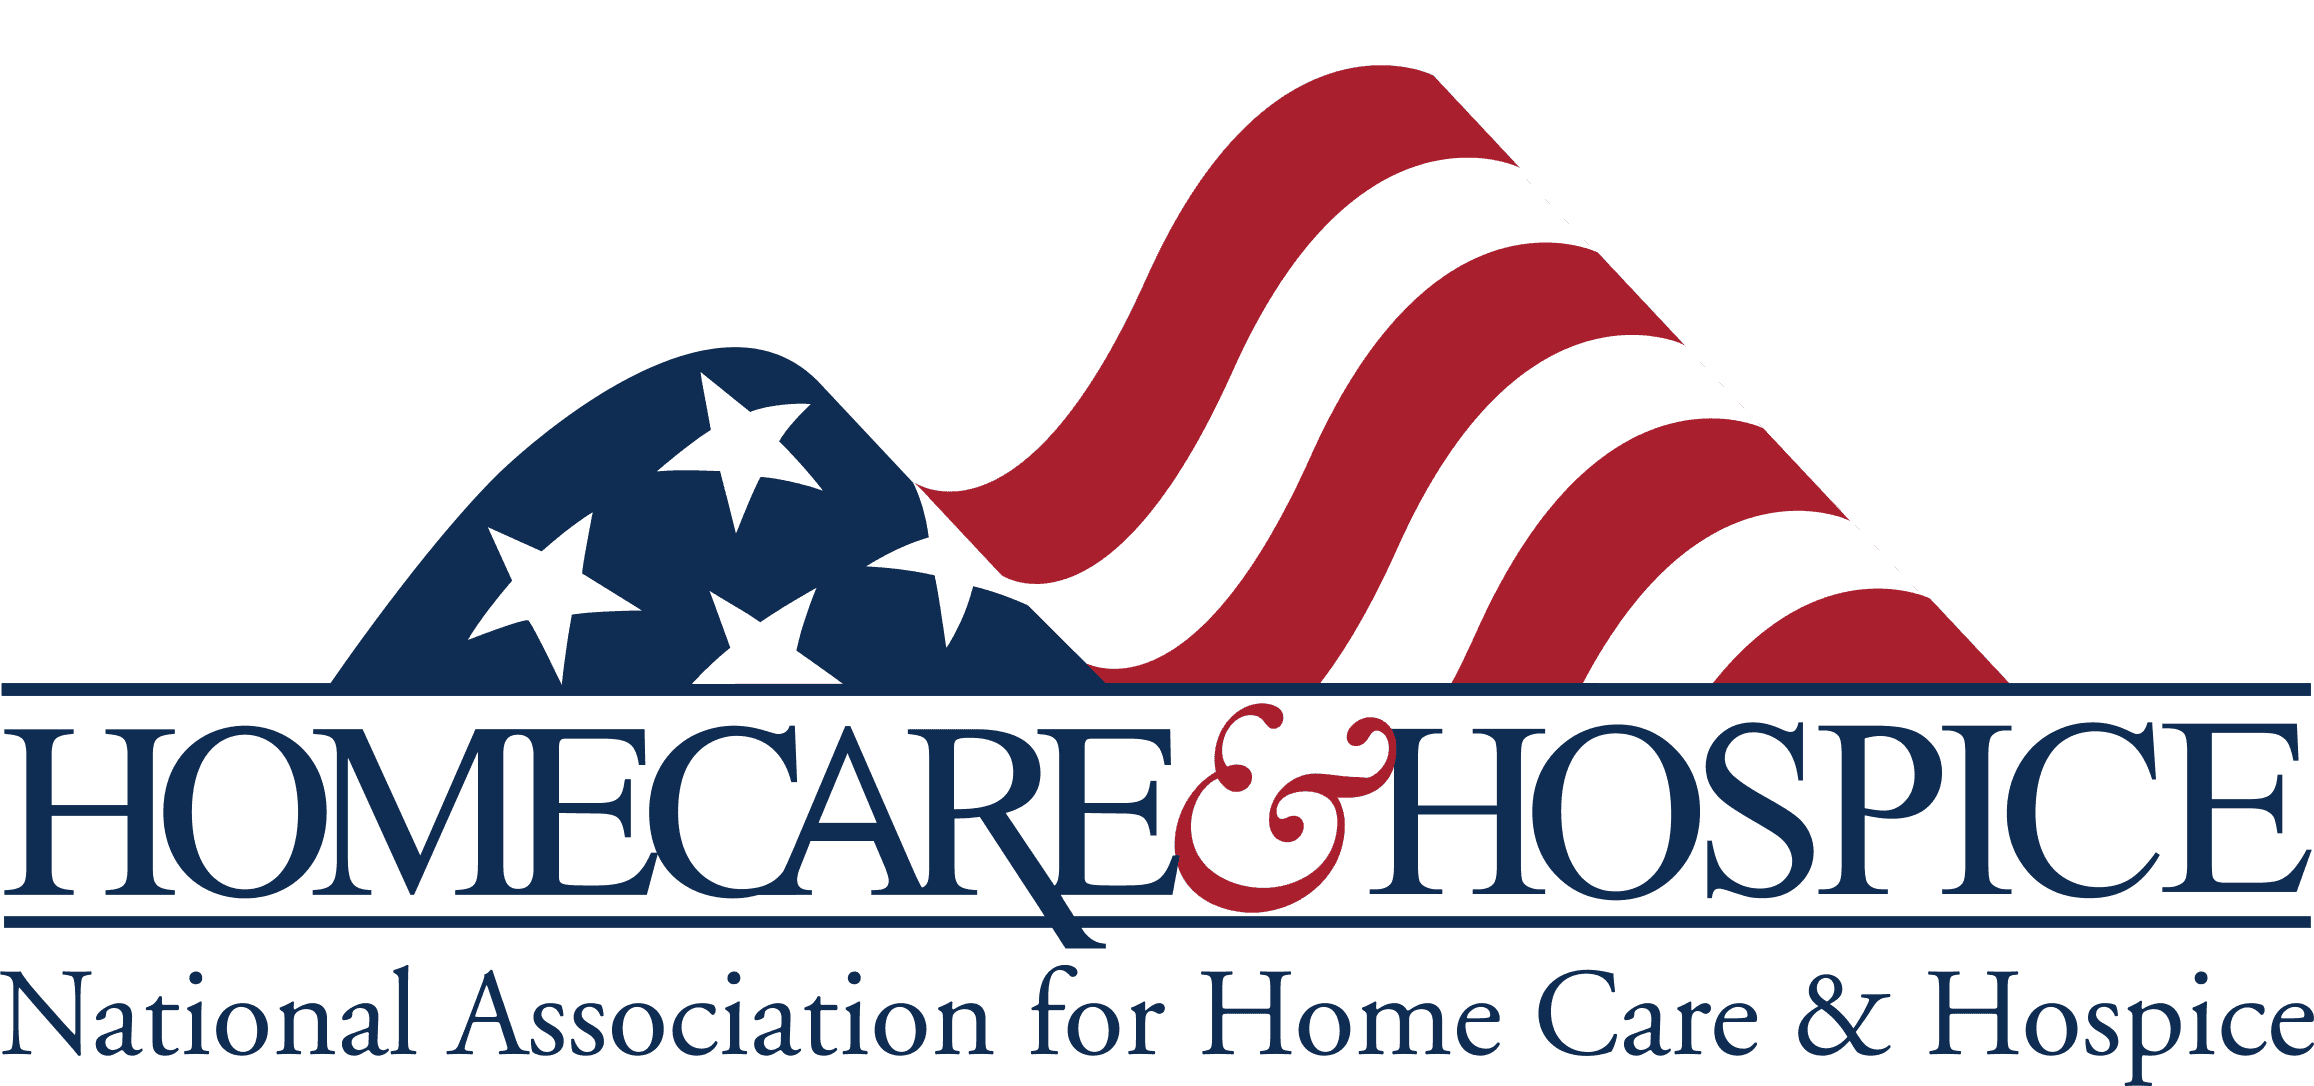 Homecare & hospice